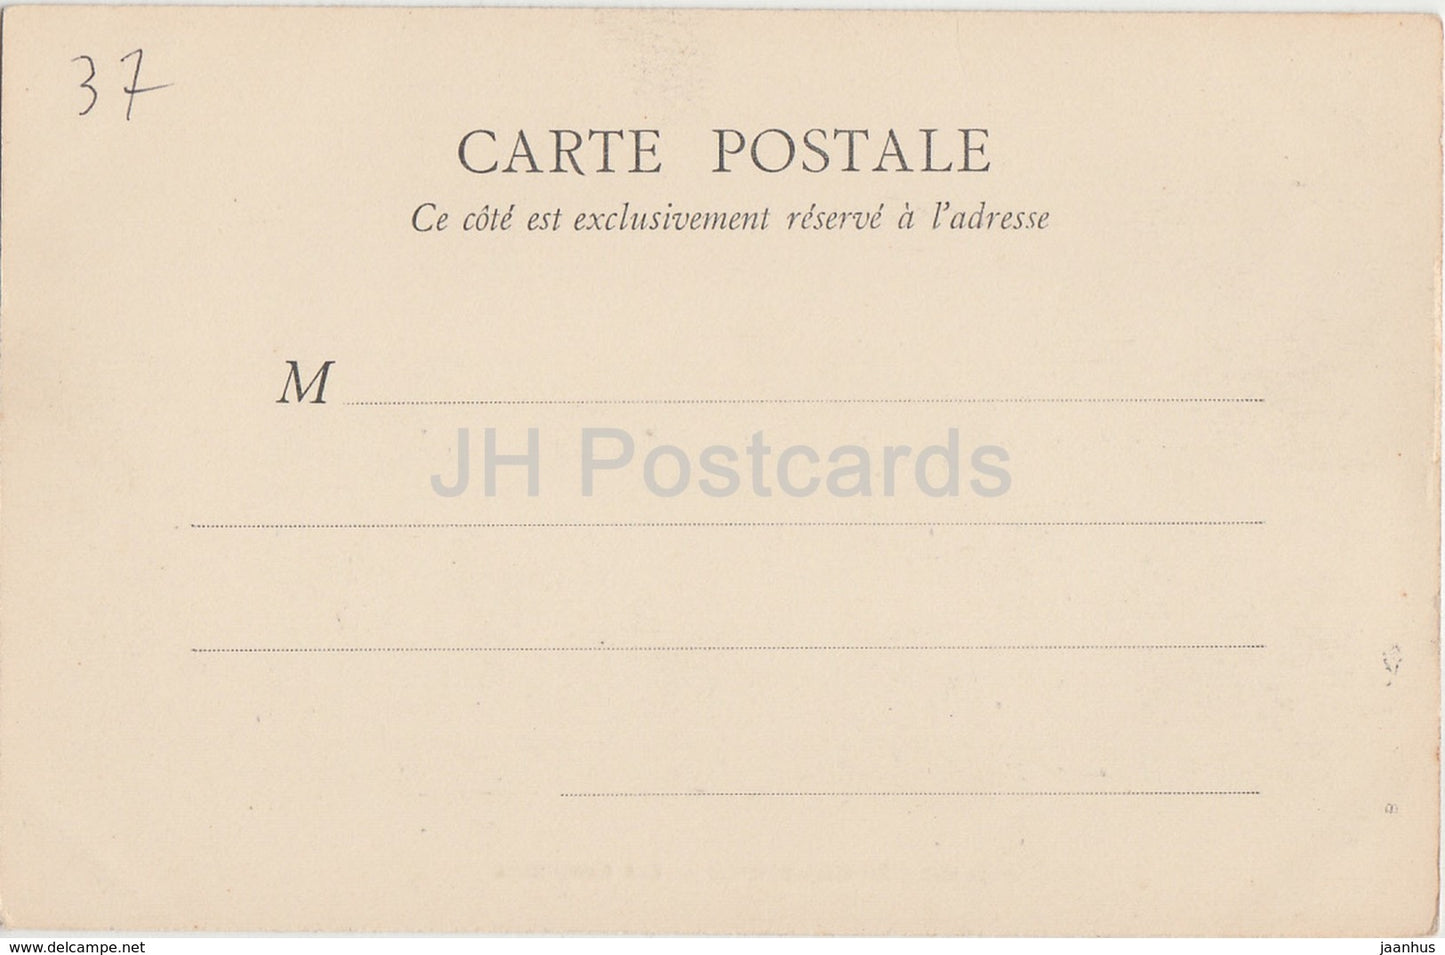 Chateau de Chenonceaux - Les Communs - castle - old postcard - France - used